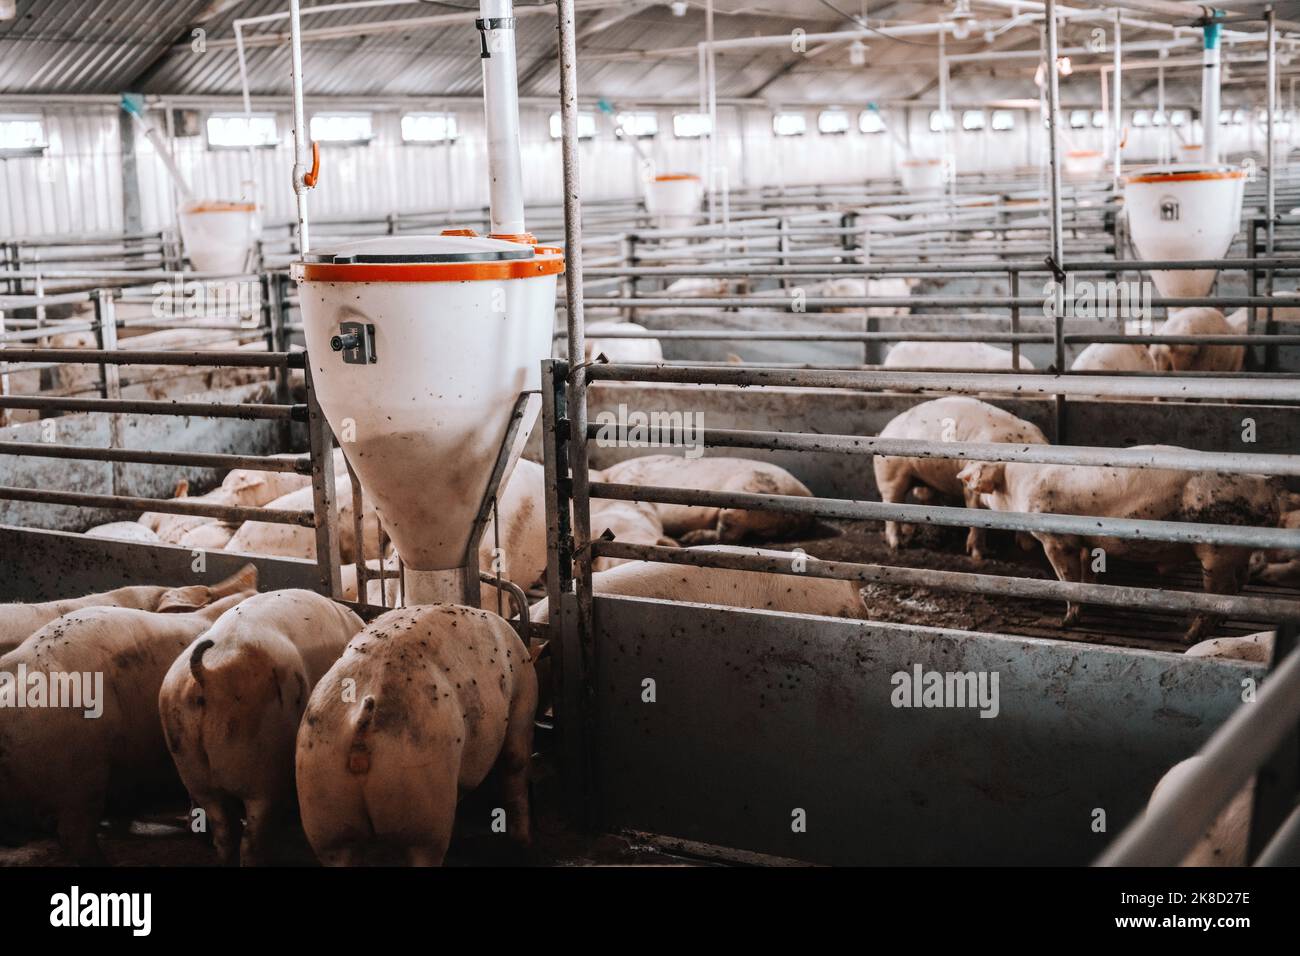 Photo de nombreux porcs adultes gras mangeant dans une grange animale. Concept de production de viande. Banque D'Images